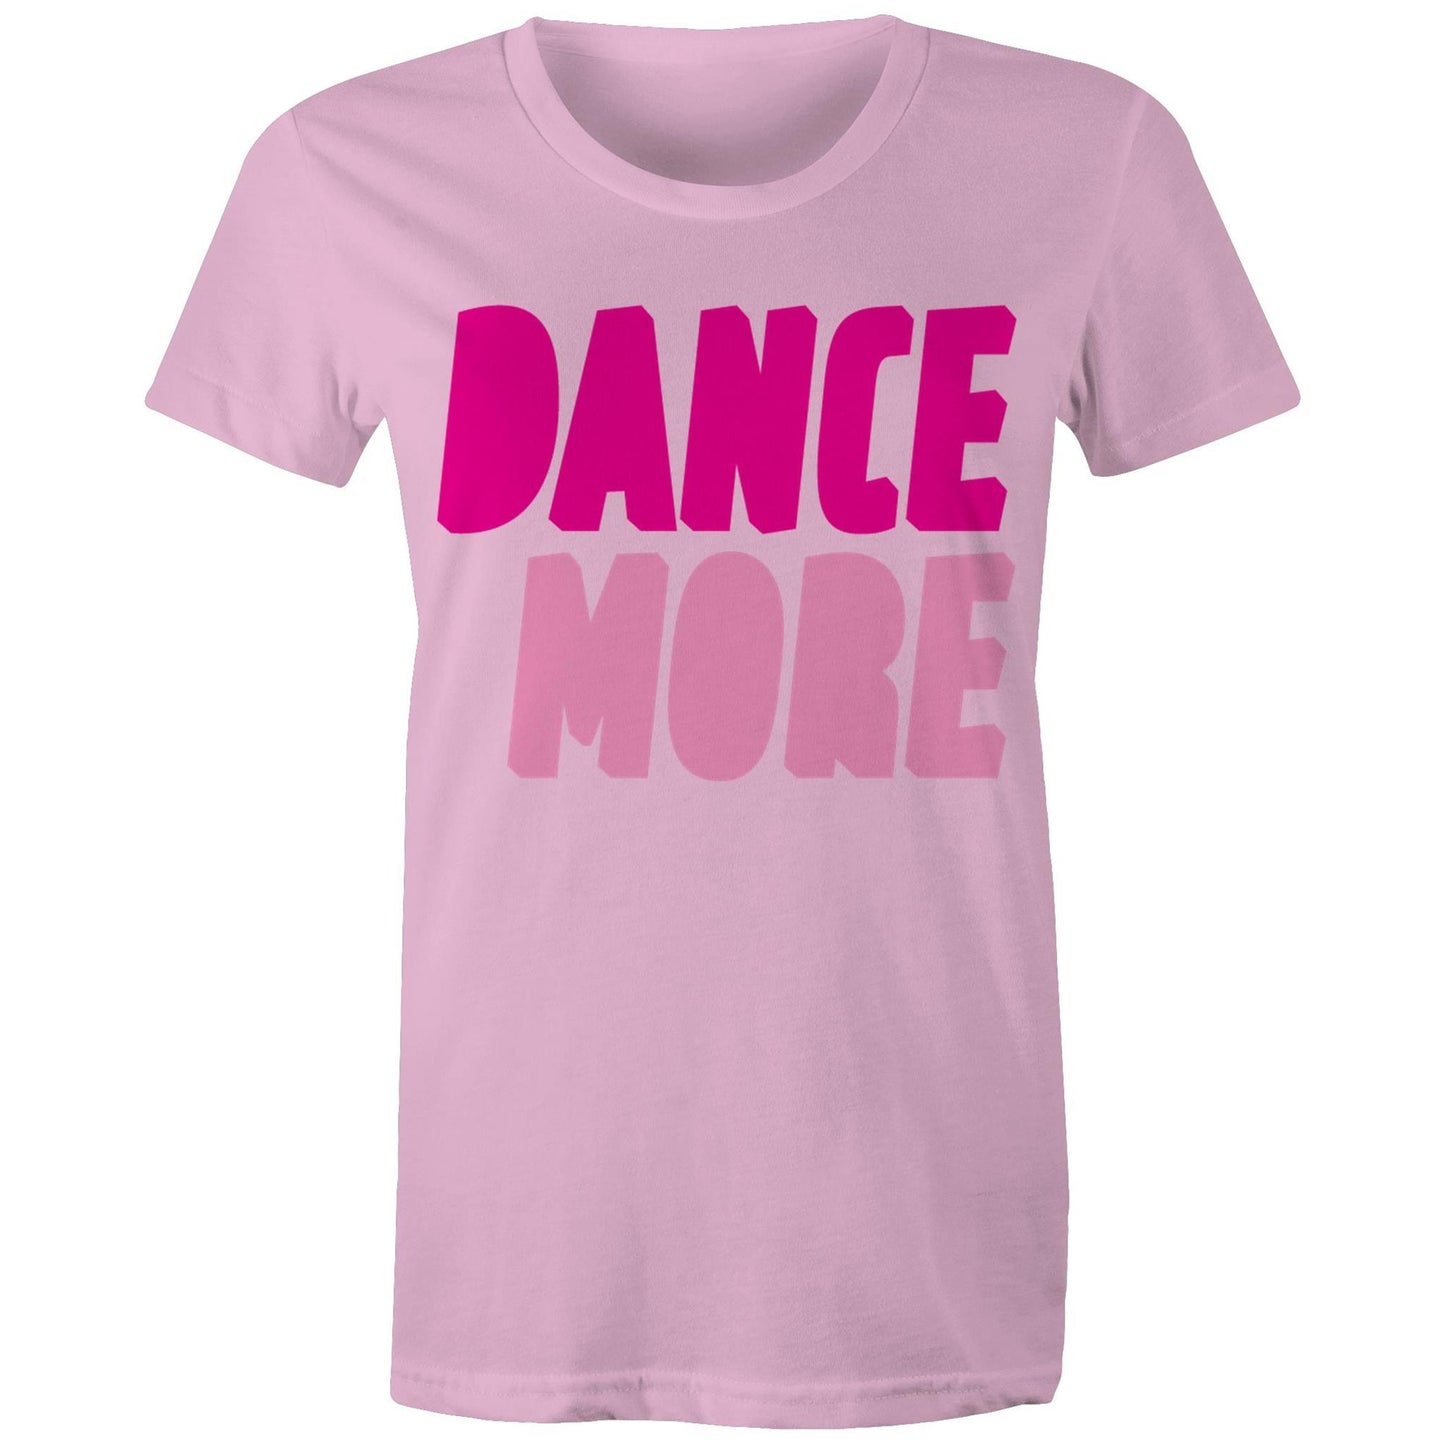 Dance More On The Dancefloor Front & Back Print Women's Maple Tee